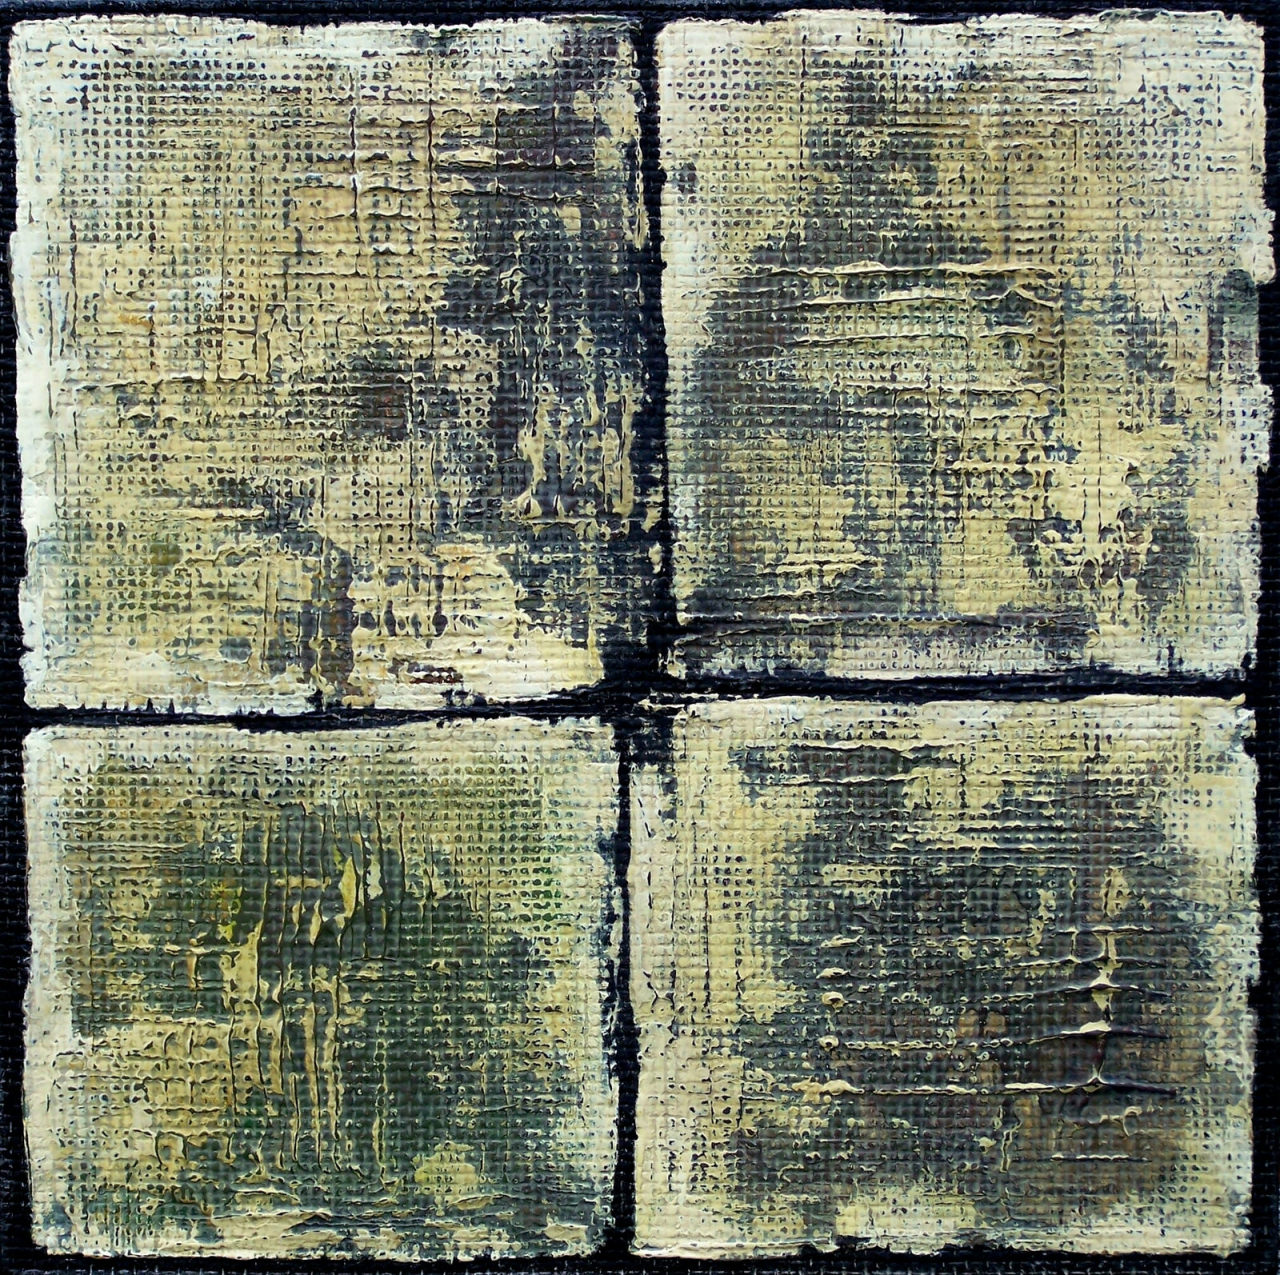 “Four existential poems”, acrylic on fibreboard, 25 x 25 x 1.5 cm by Cezary Gapik
www.saatchiart.com/cezarygapik